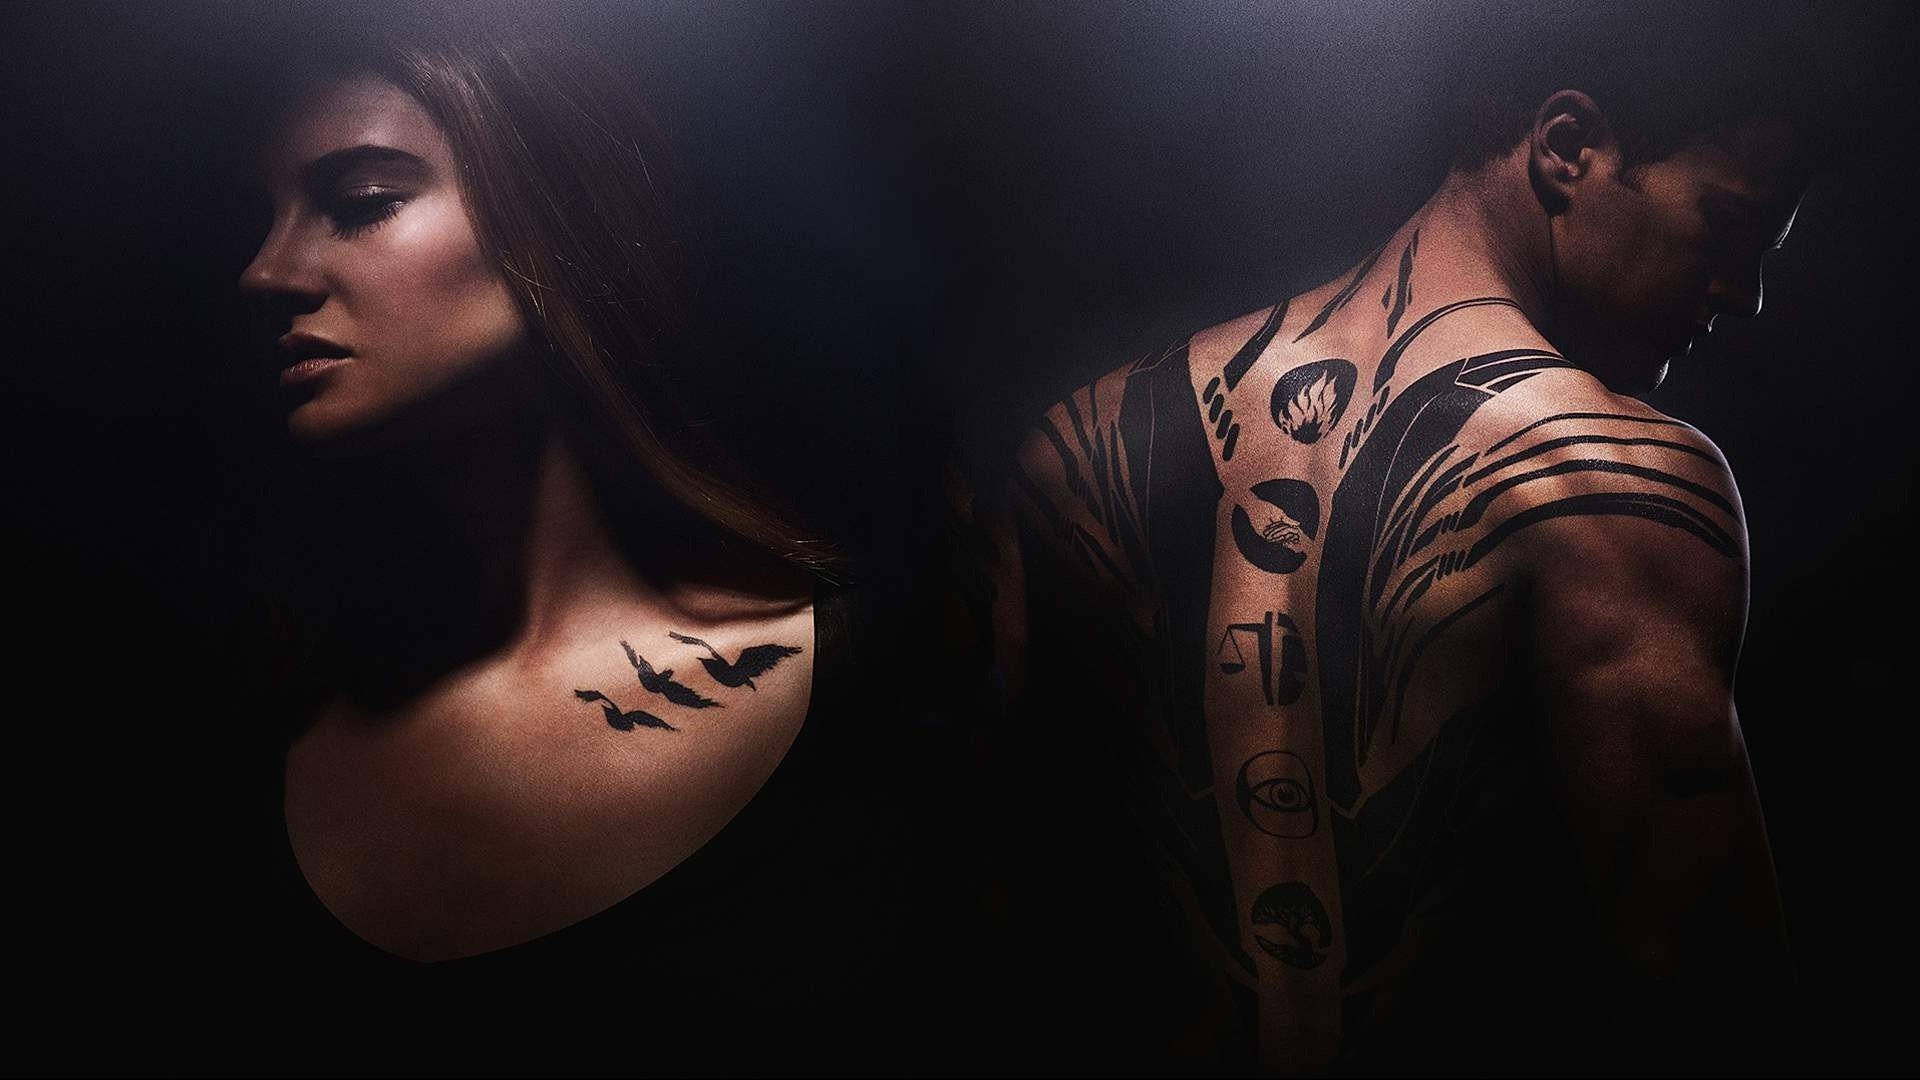 200+ Free Tattoo Artist & Tattoo Images - Pixabay